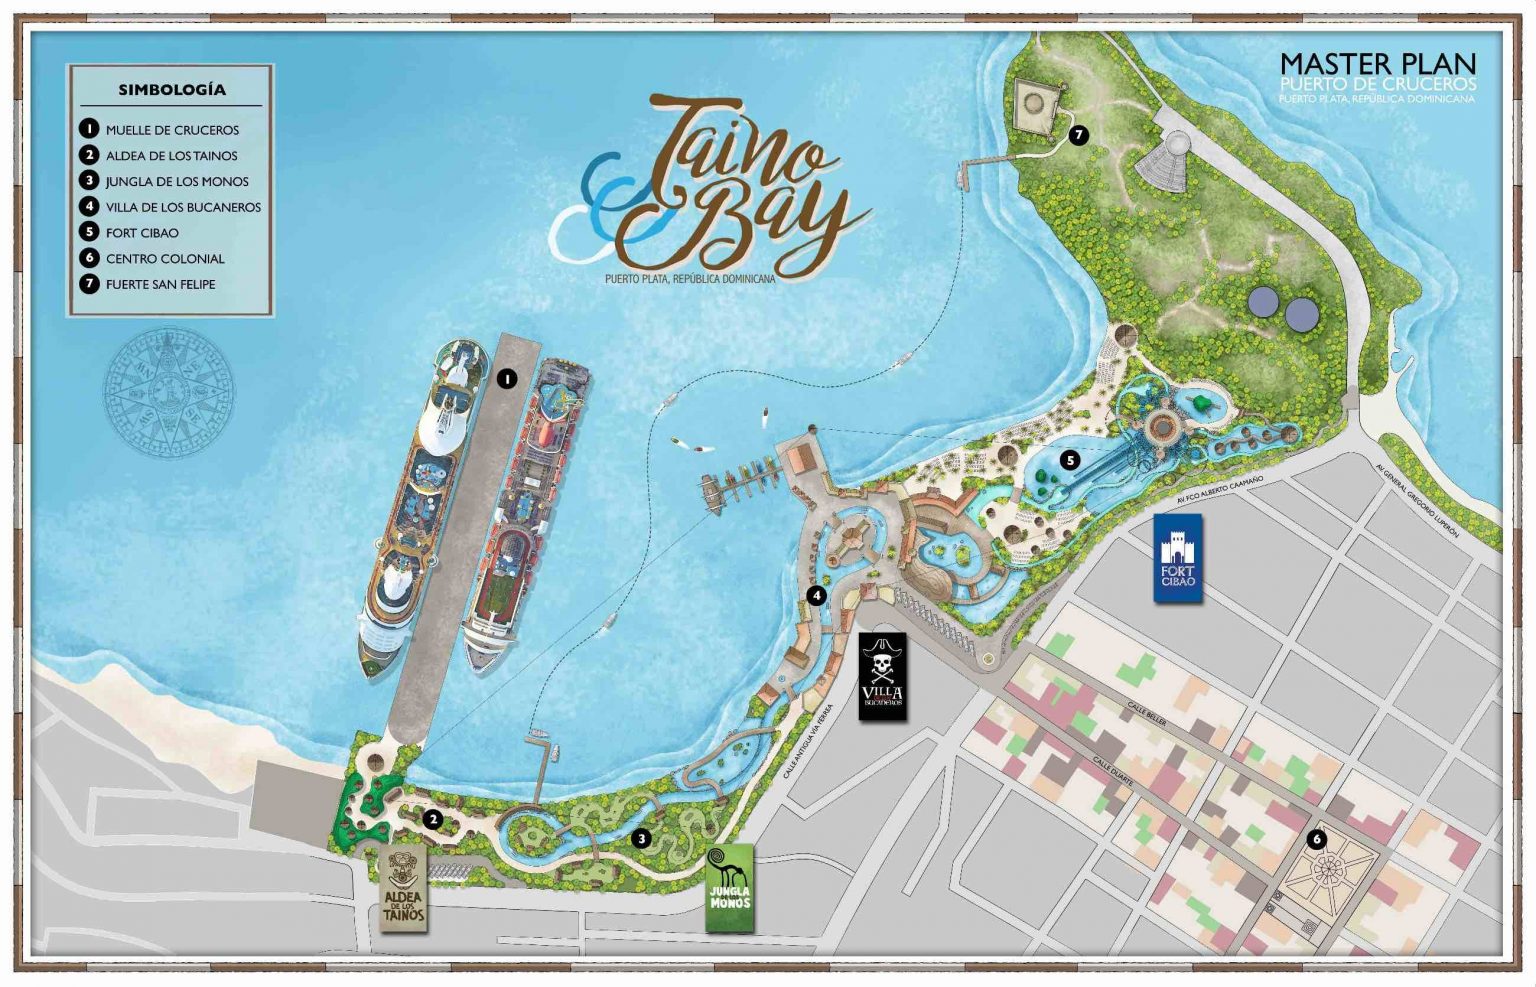 Taino Bay Cruise Ship Port Master Plan